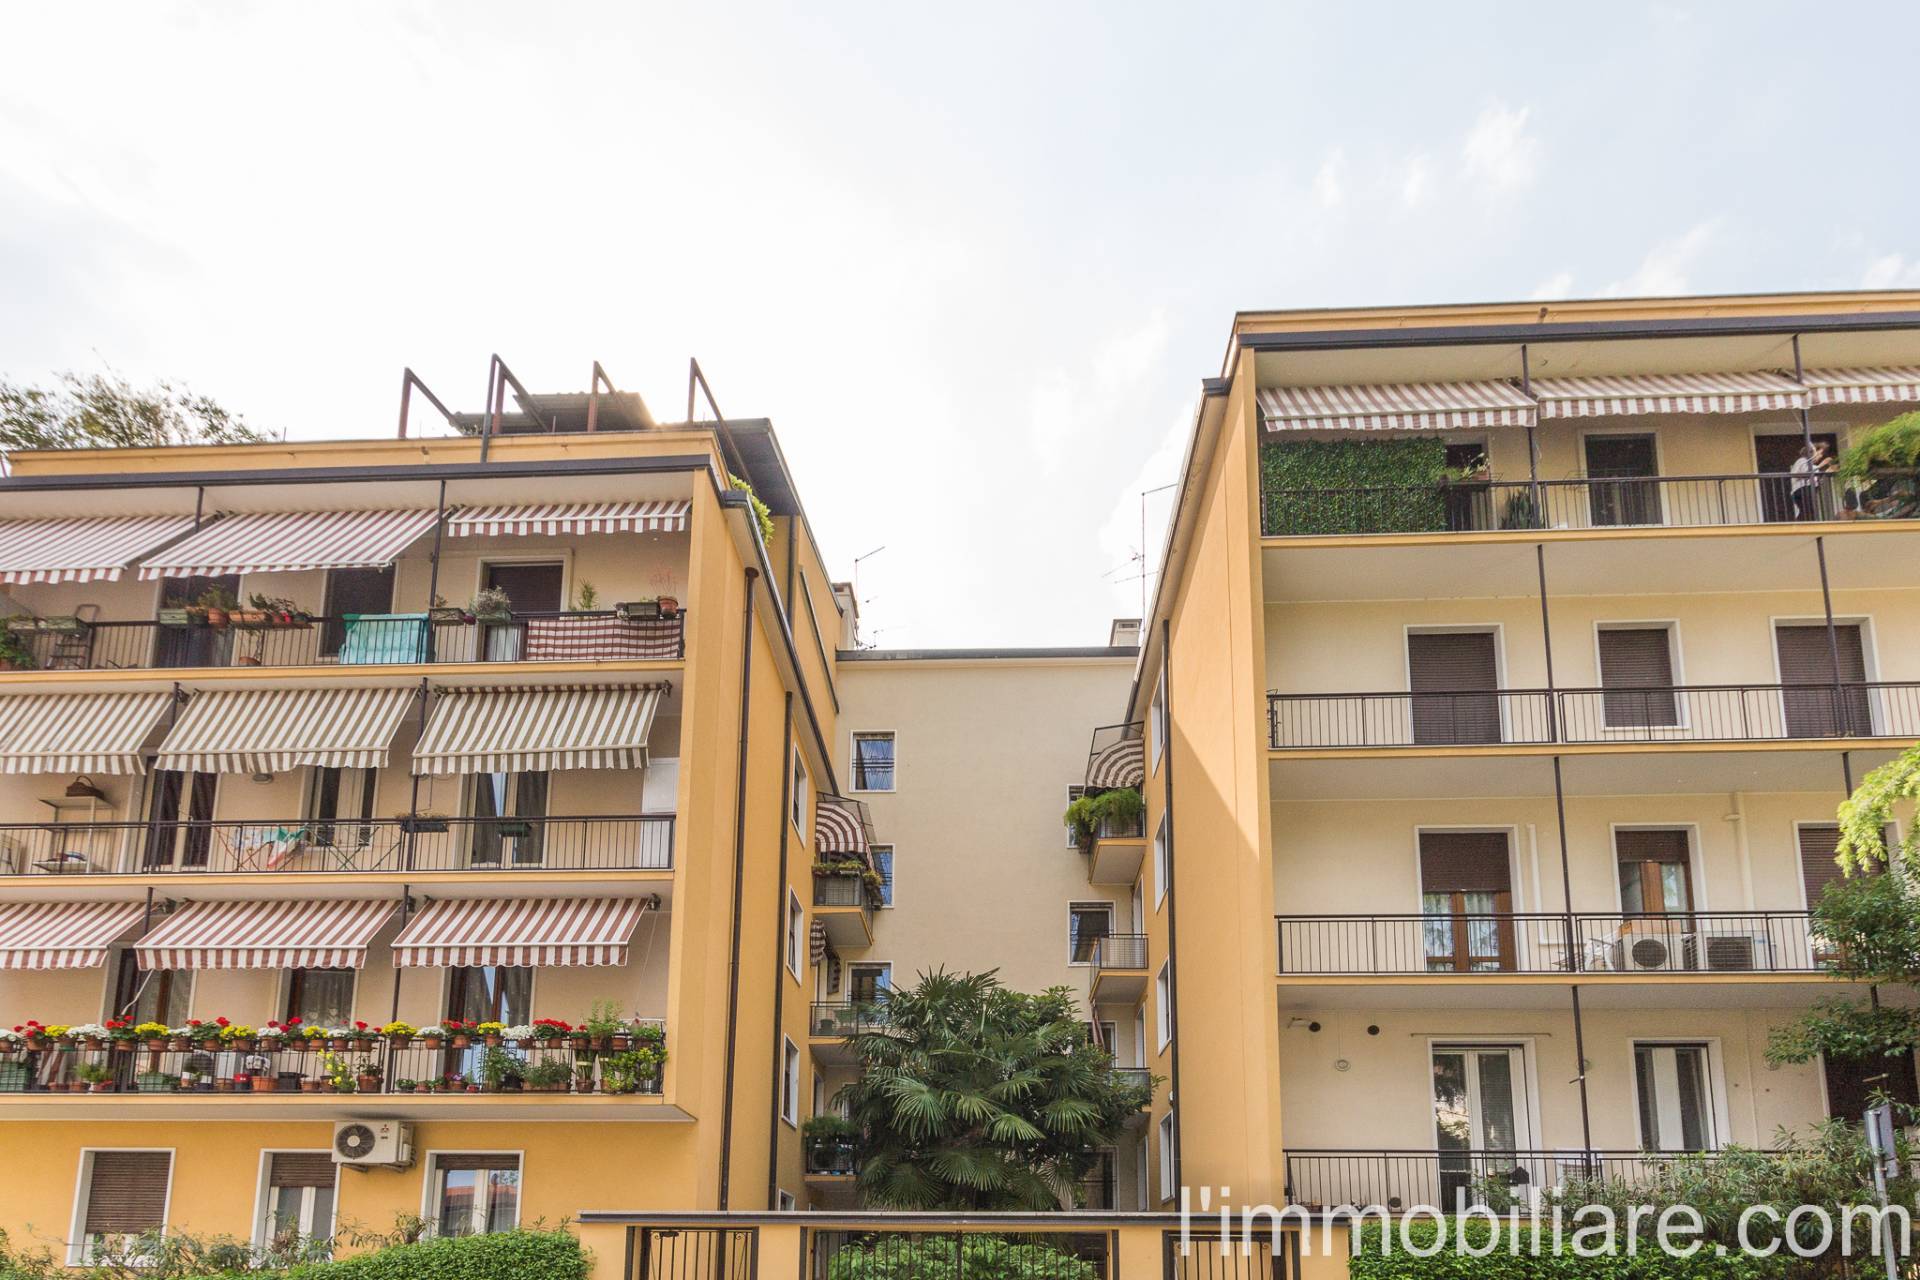 Appartamento in Vendita a Verona: 2 locali, 55 mq - Foto 26